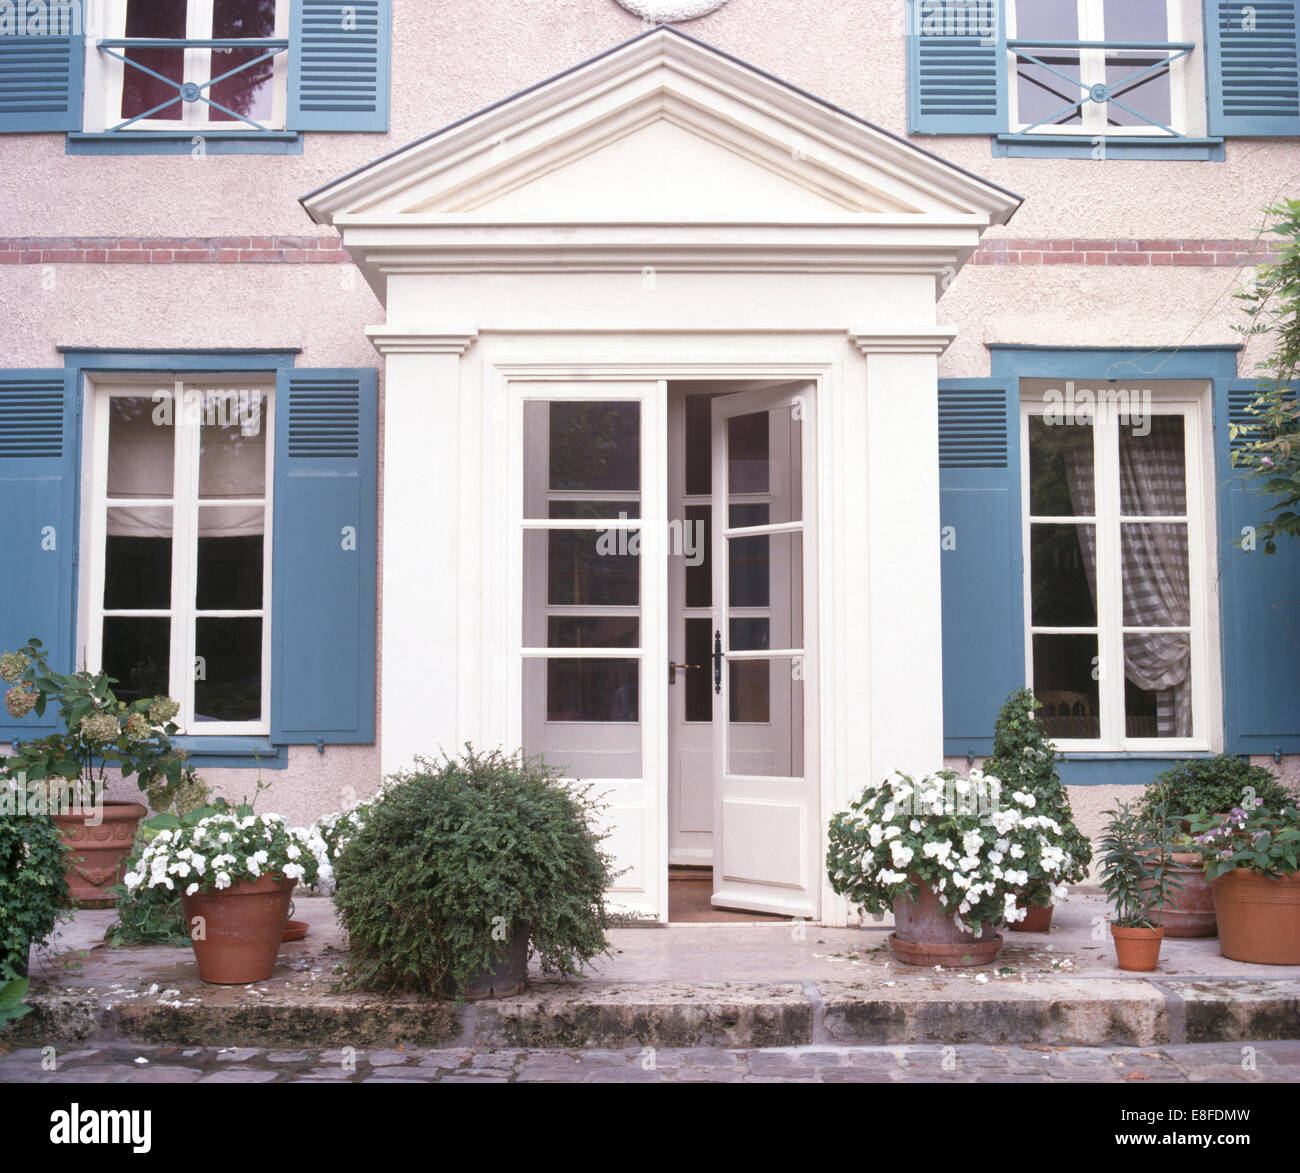 Impatiens bianco in vasi su entrambi i lati del mezzo vetri delle porte anteriori della casa francese di campagna con persiane blu Foto Stock